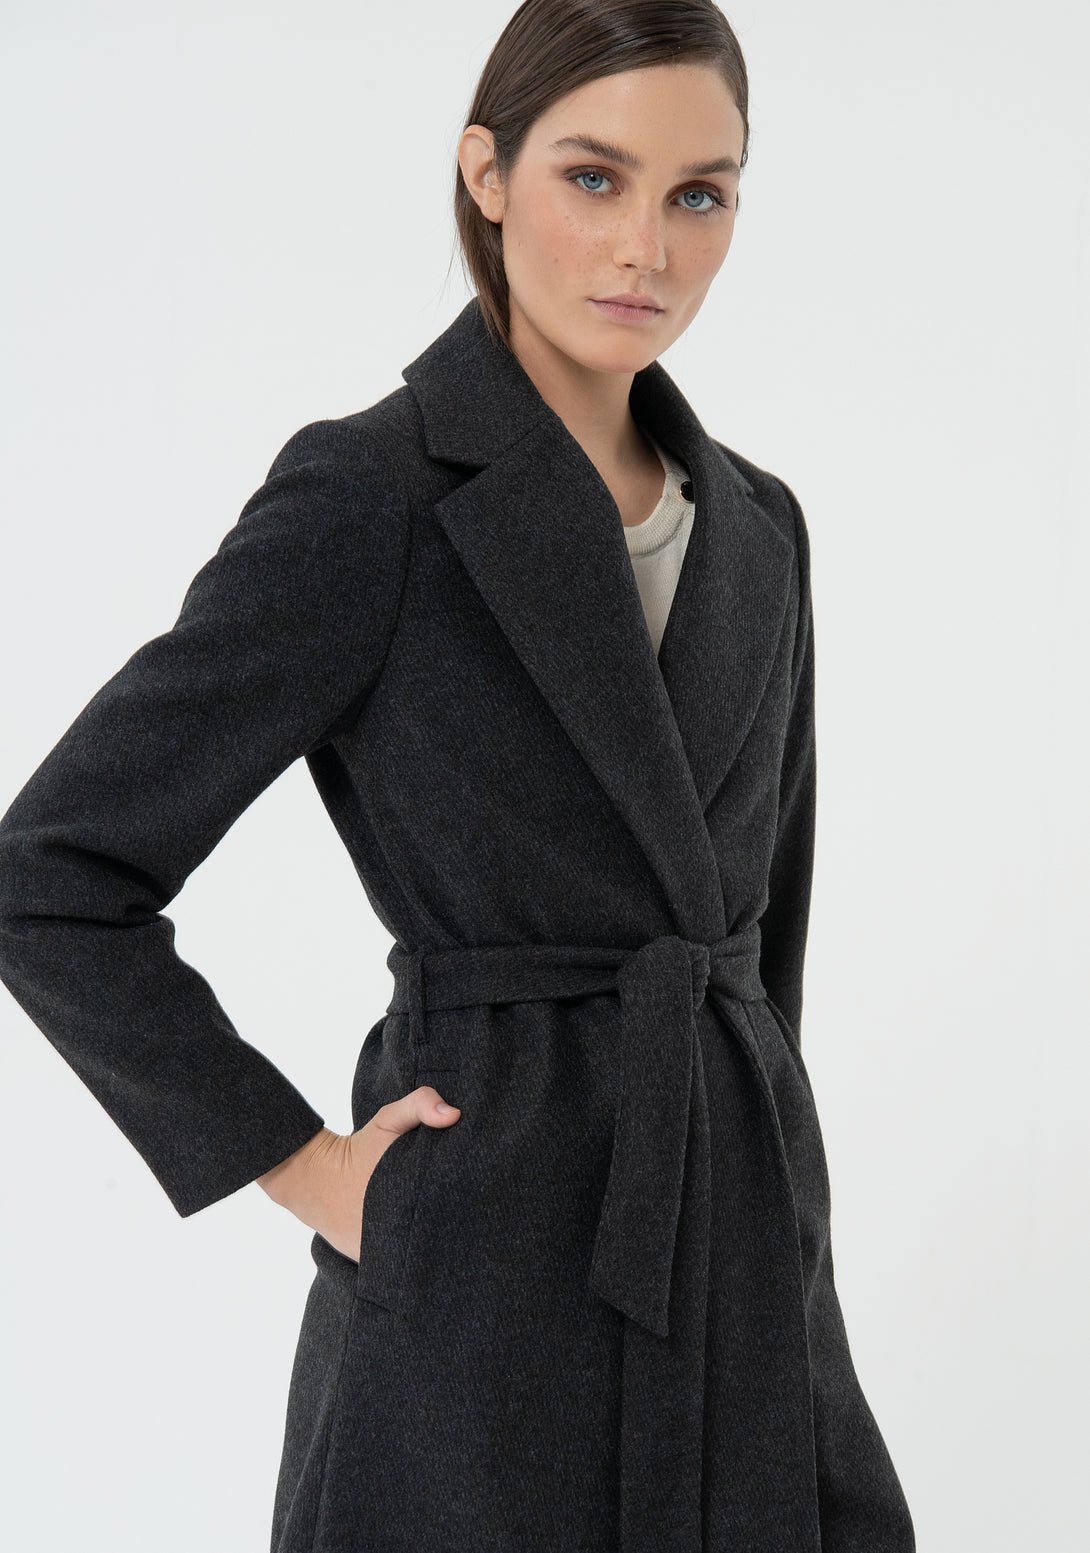 Wool coat with a waist belt FU23WC1012W44101-121 FRACOMINA – Fracomina ...